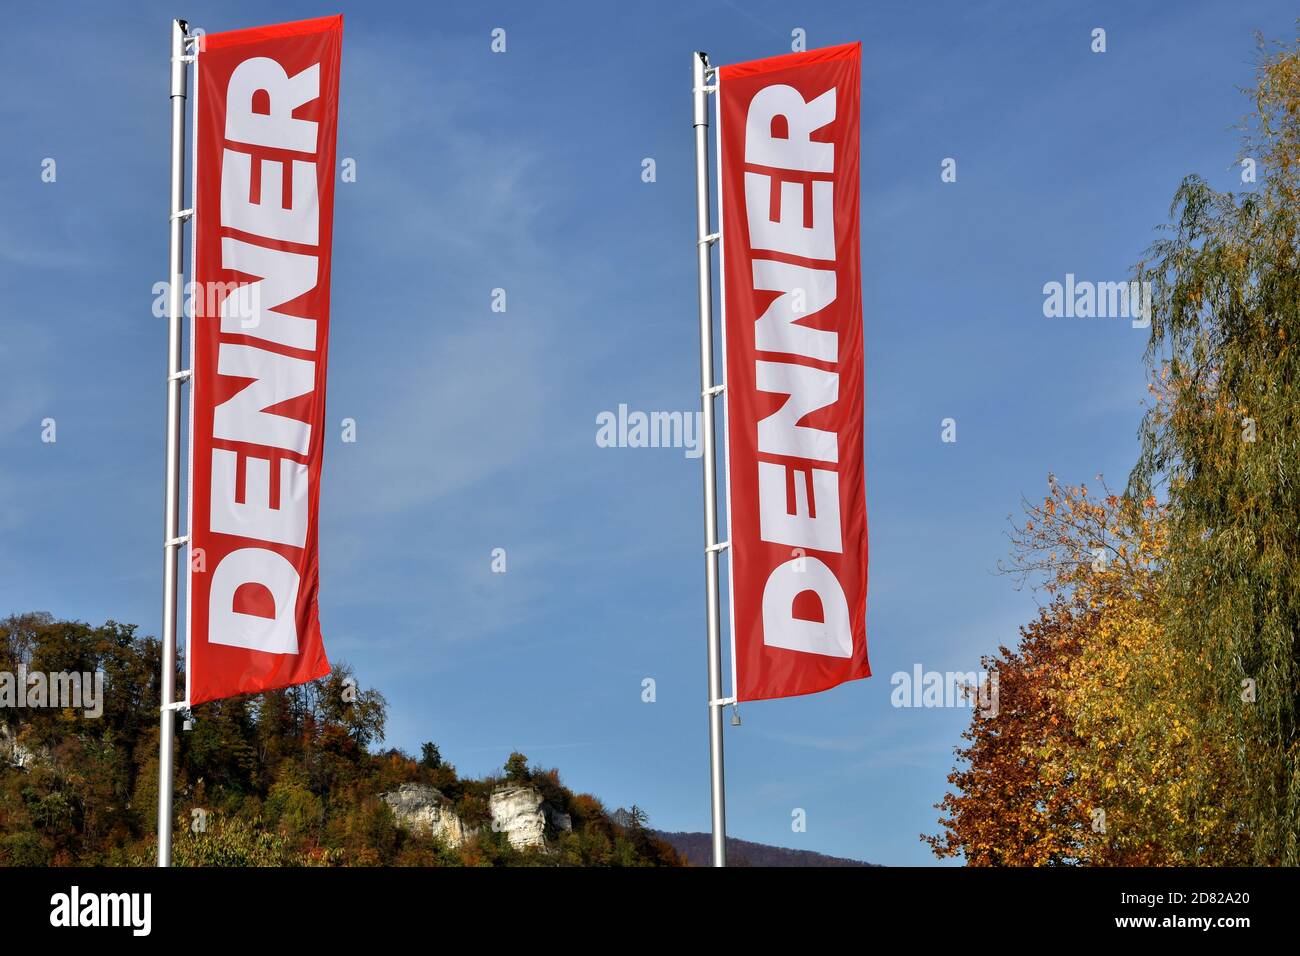 Deux drapeaux de magasin appelé Denner, magasin de rabais en Suisse, photographiés un jour d'automne clair. Banque D'Images